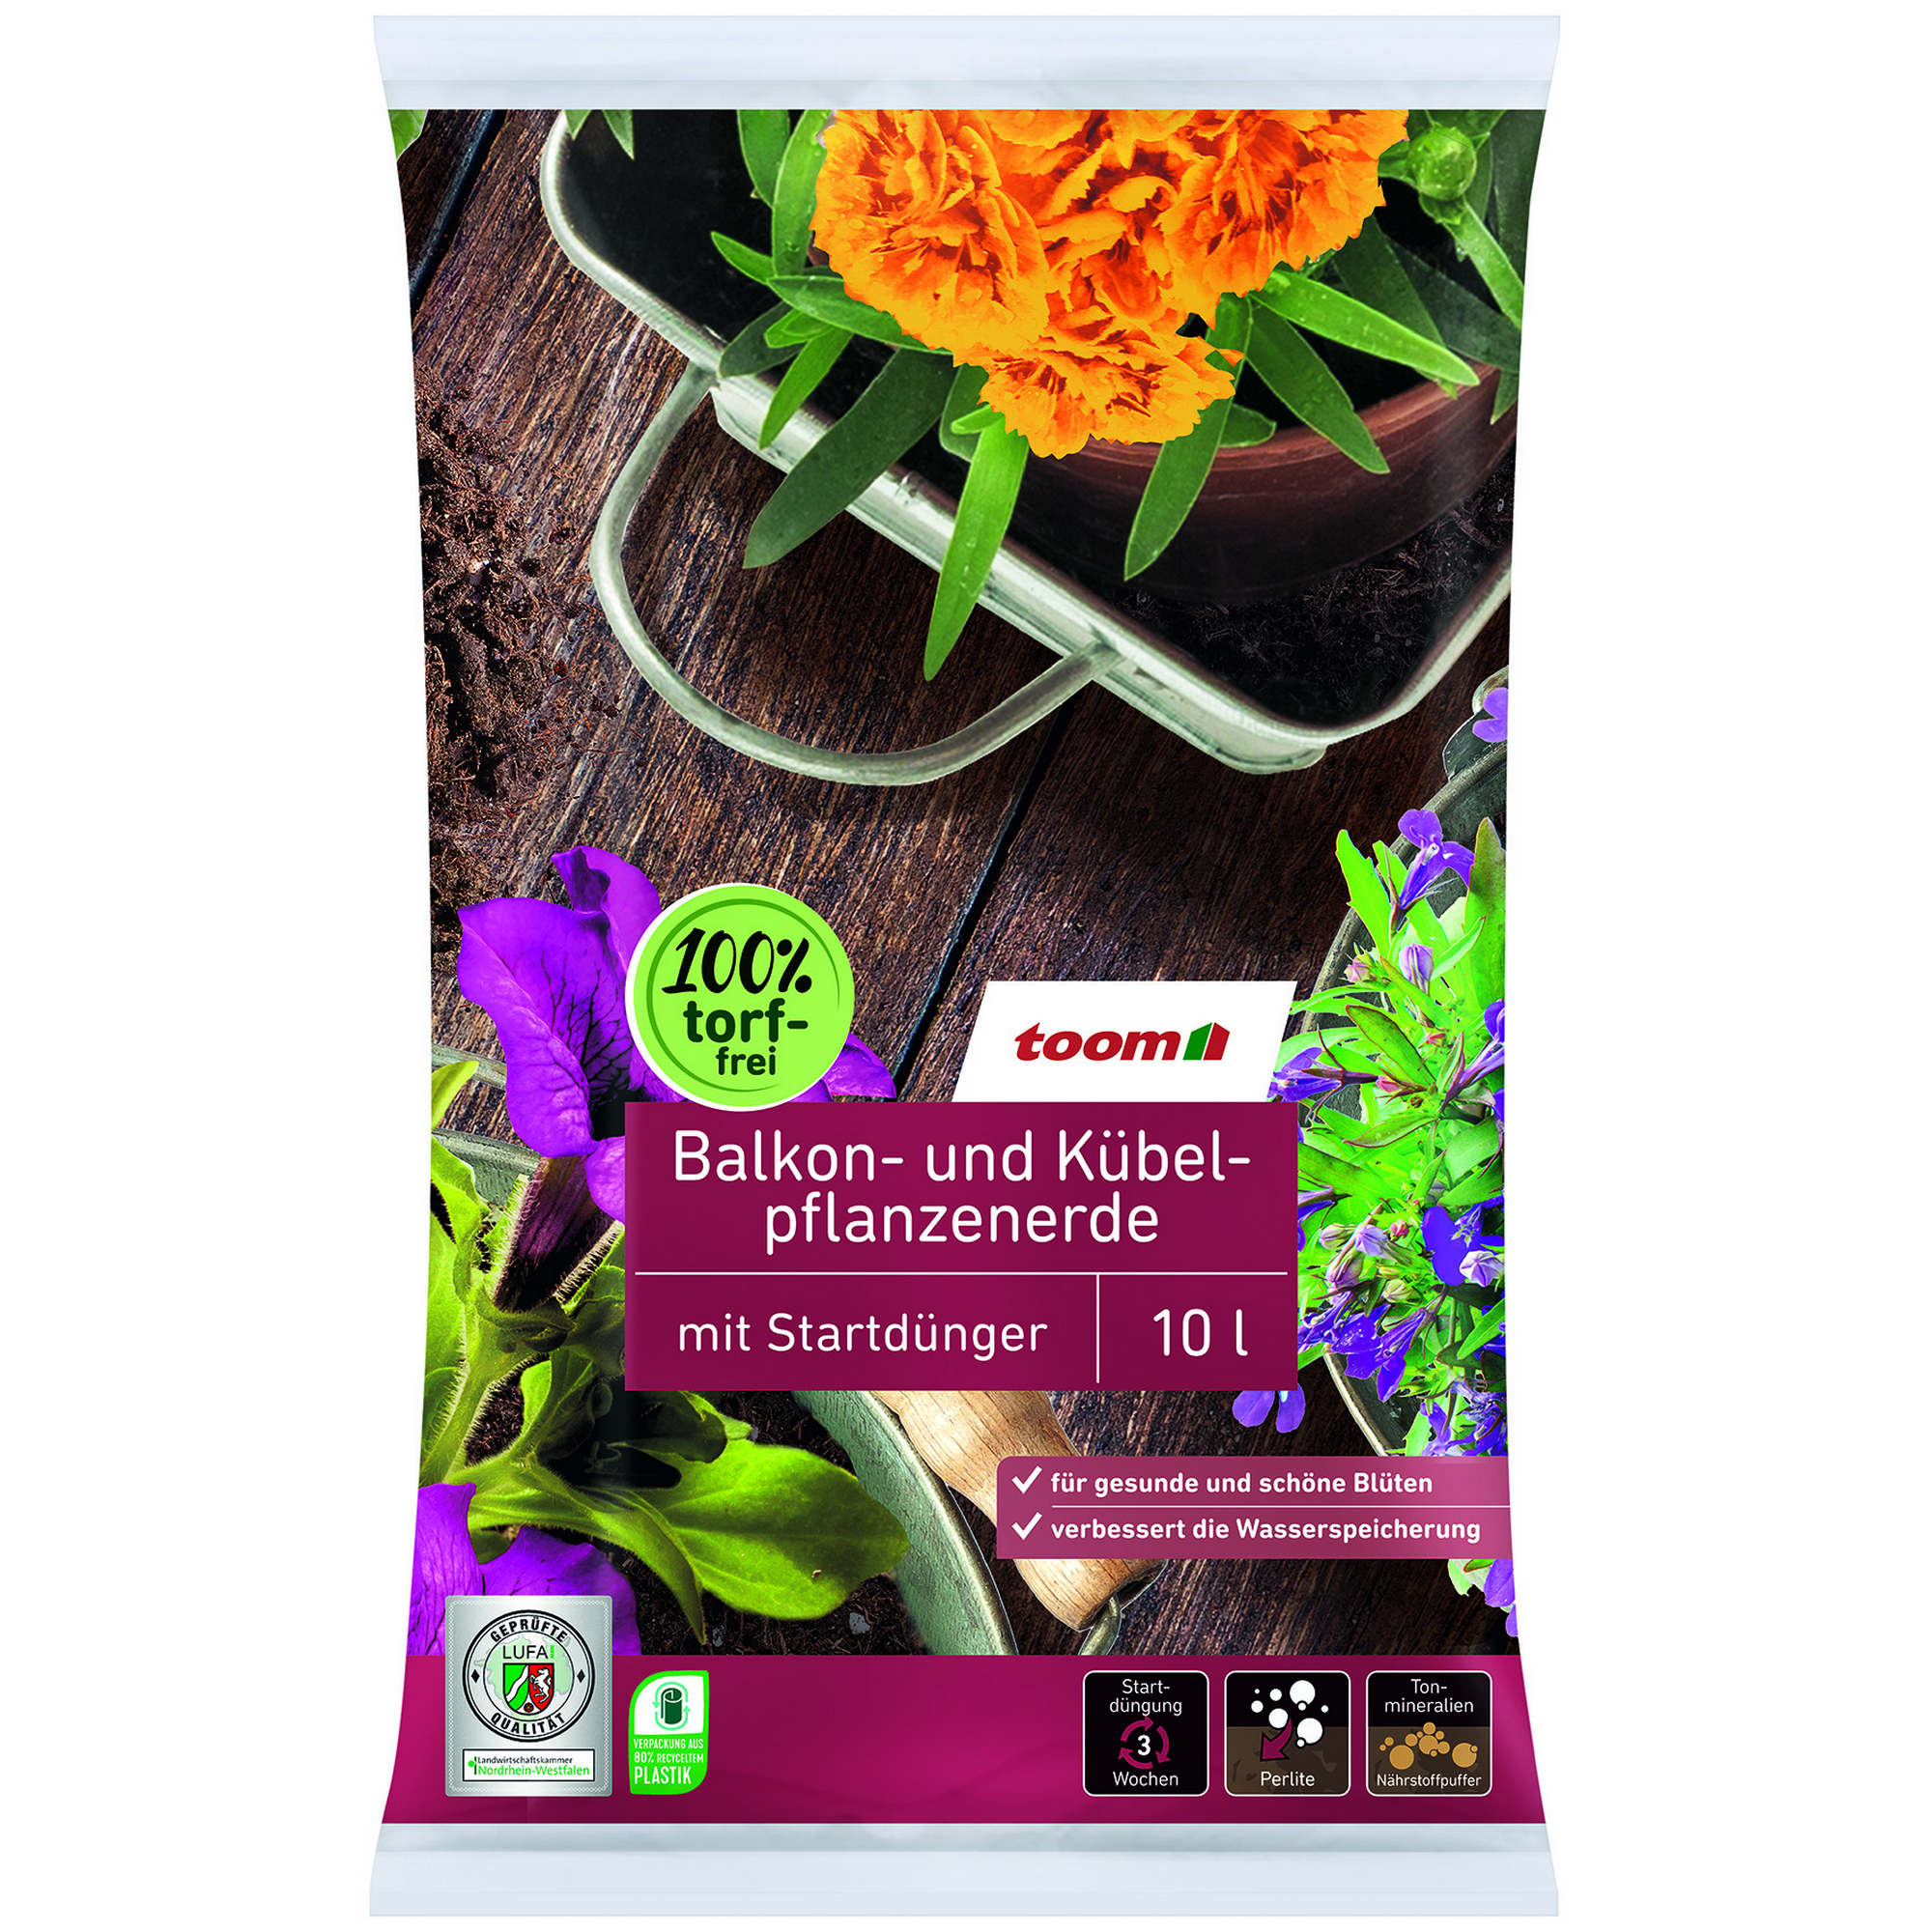 Balkon- und Kübelpflanzenerde torffrei 10 l + product picture